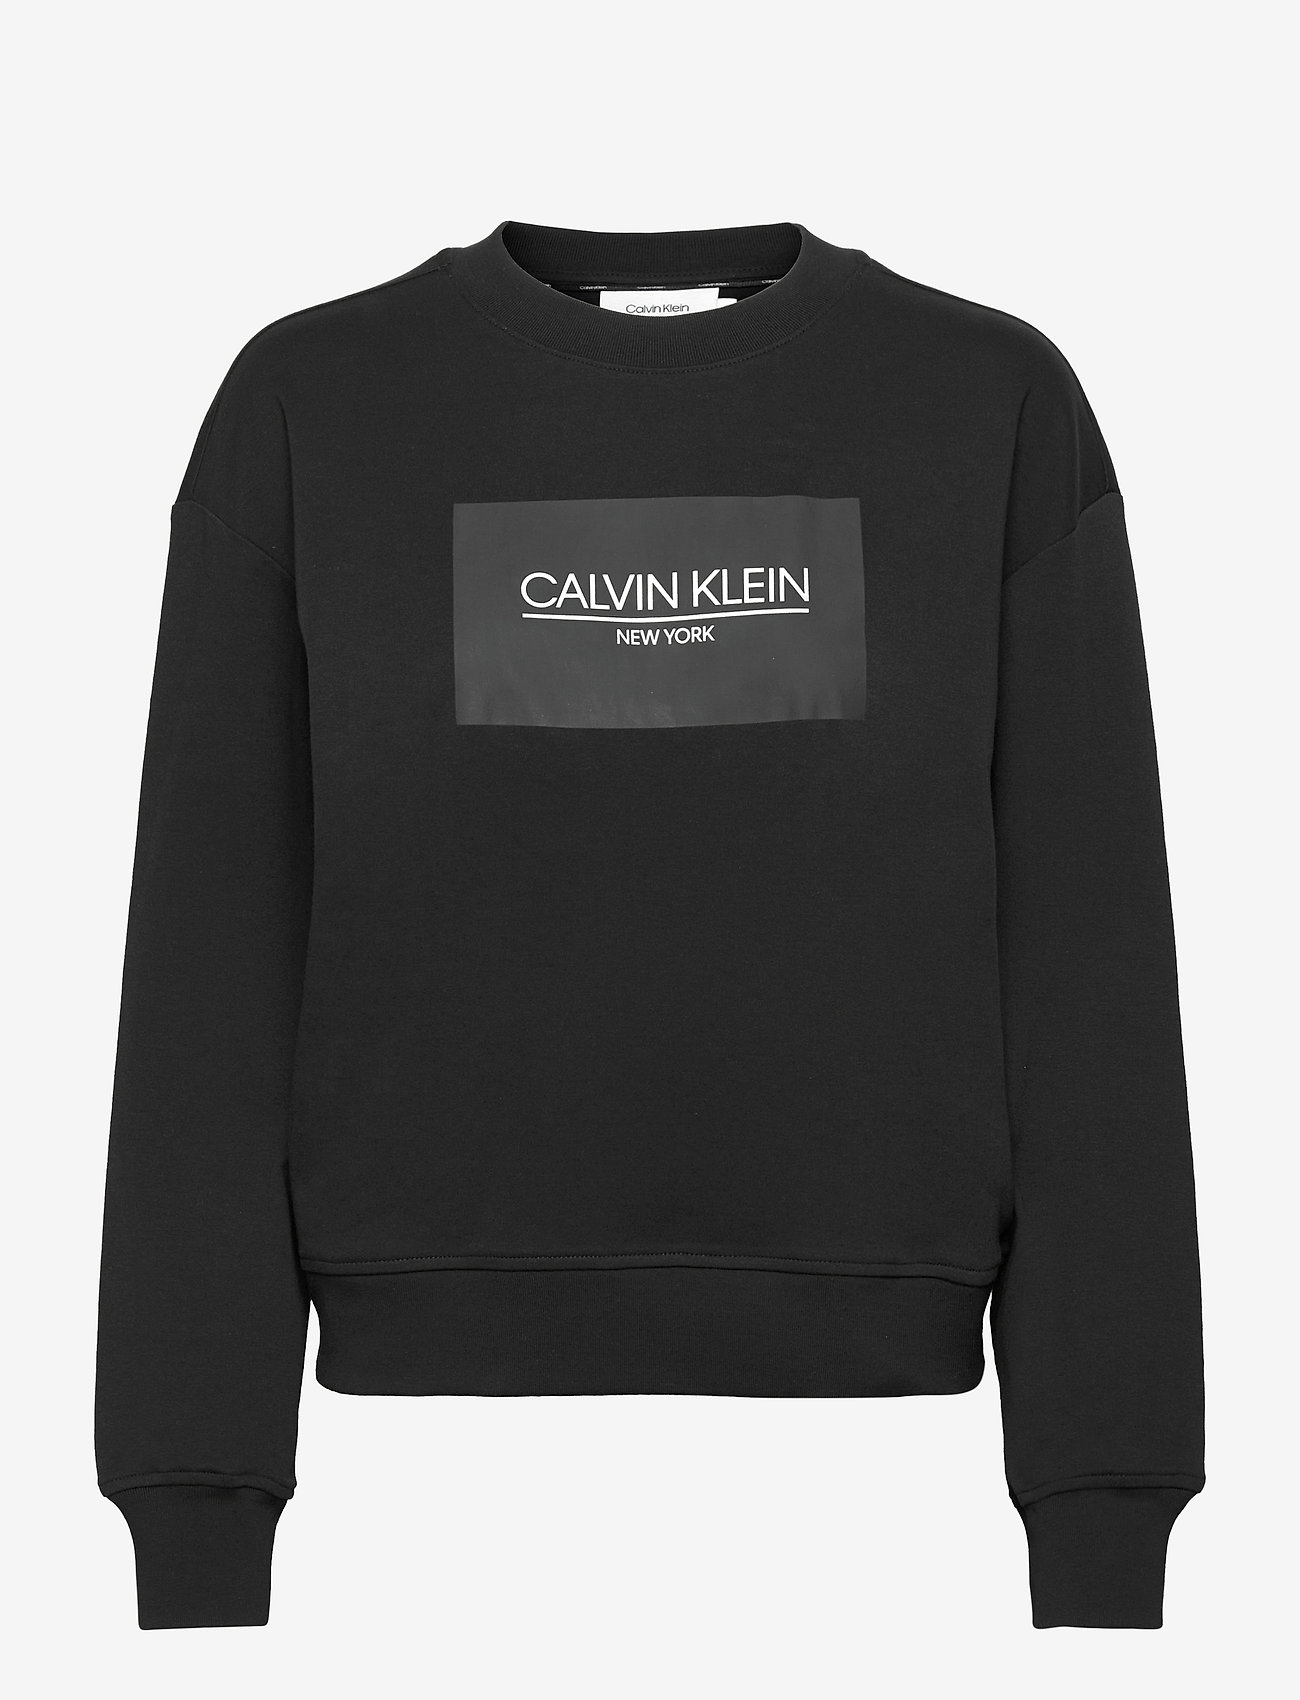 Verbeteren Een zin onwettig Calvin Klein Ck New York Patch Sweatshirt - Sweatshirts | Boozt.com